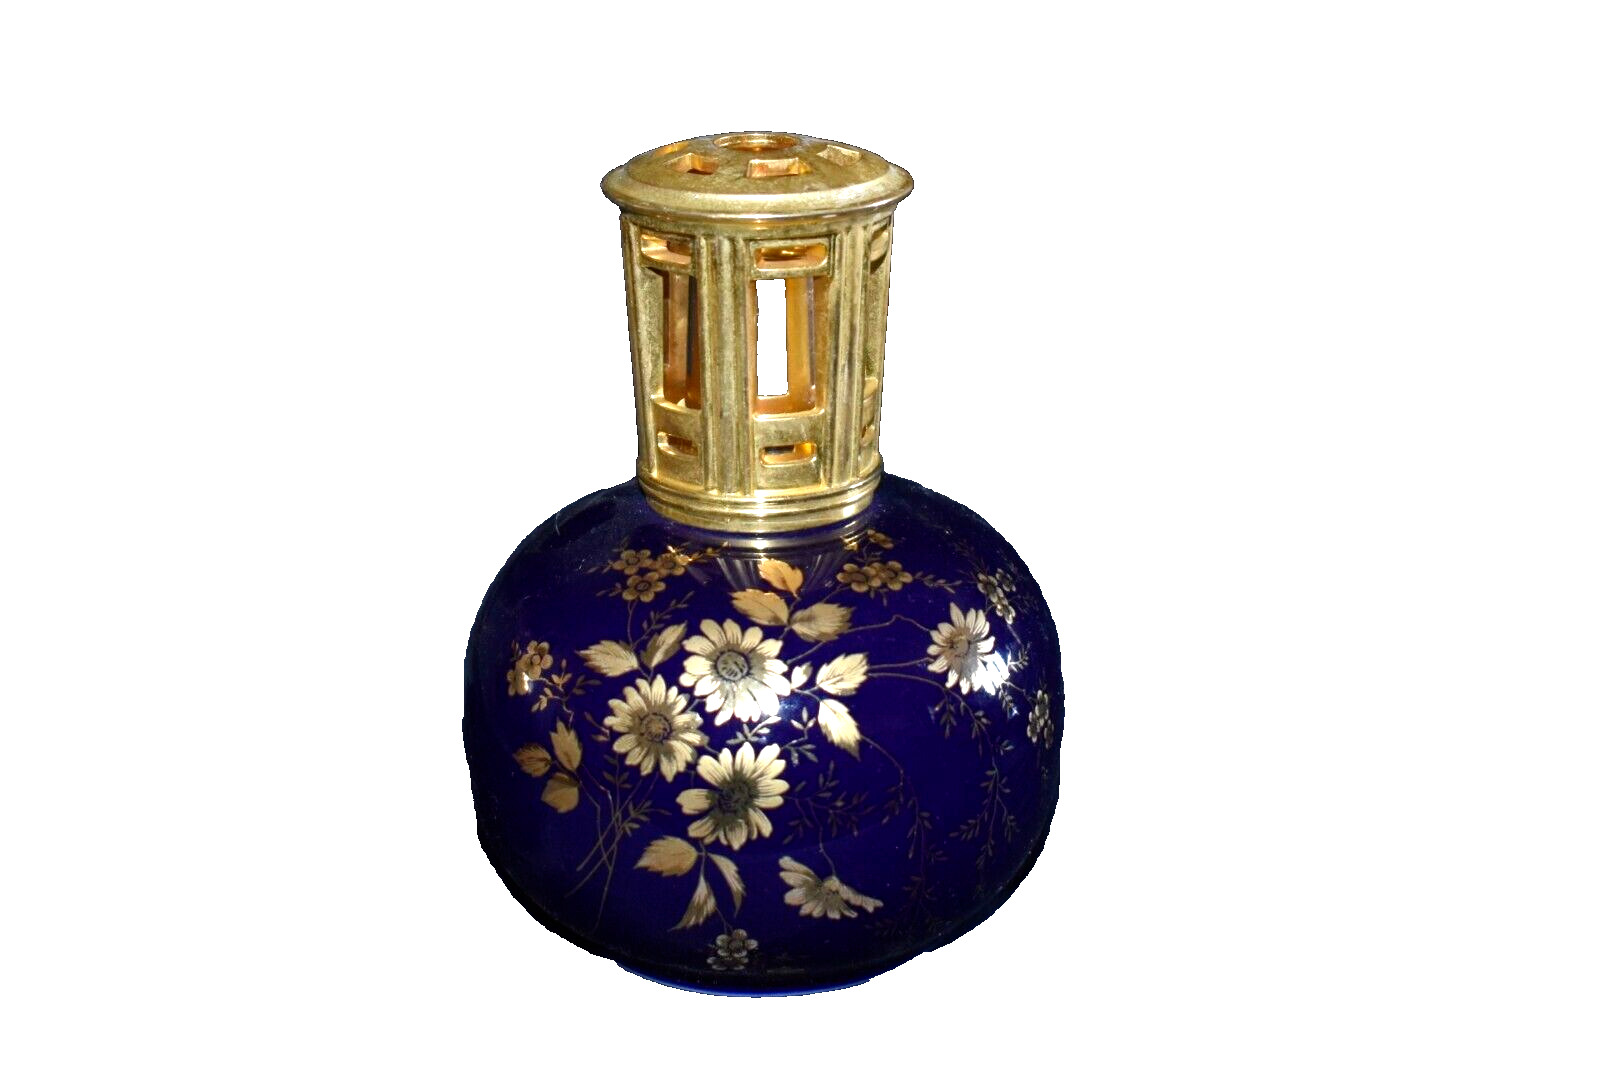 LAMPE BERGER Fragrance Oil Lamp Artoria Limoges France Cobalt Blue Gold Flowers